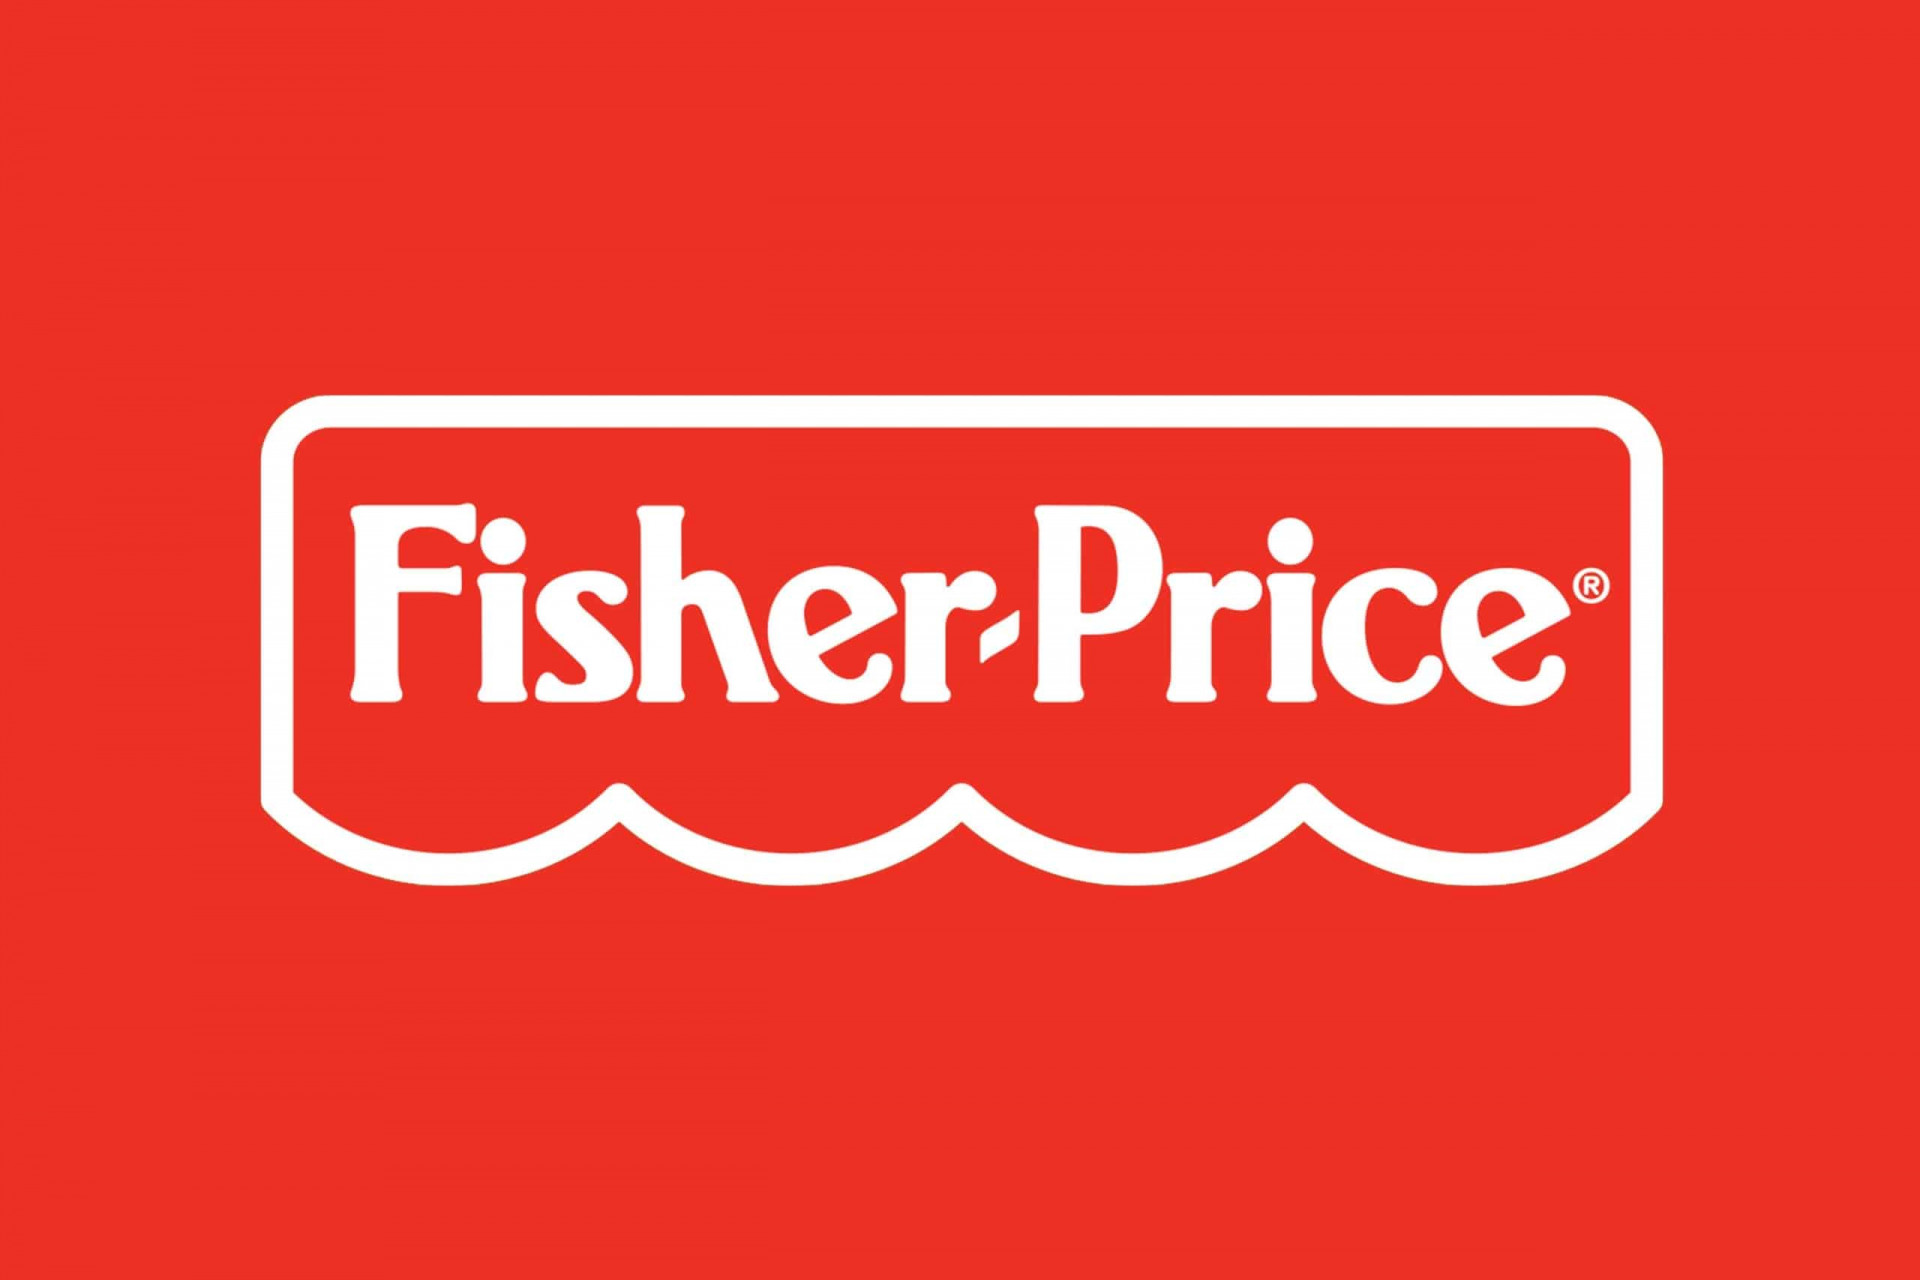 Logo officiel de la marque Fisher Price écrit en blanc sur fond rouge.